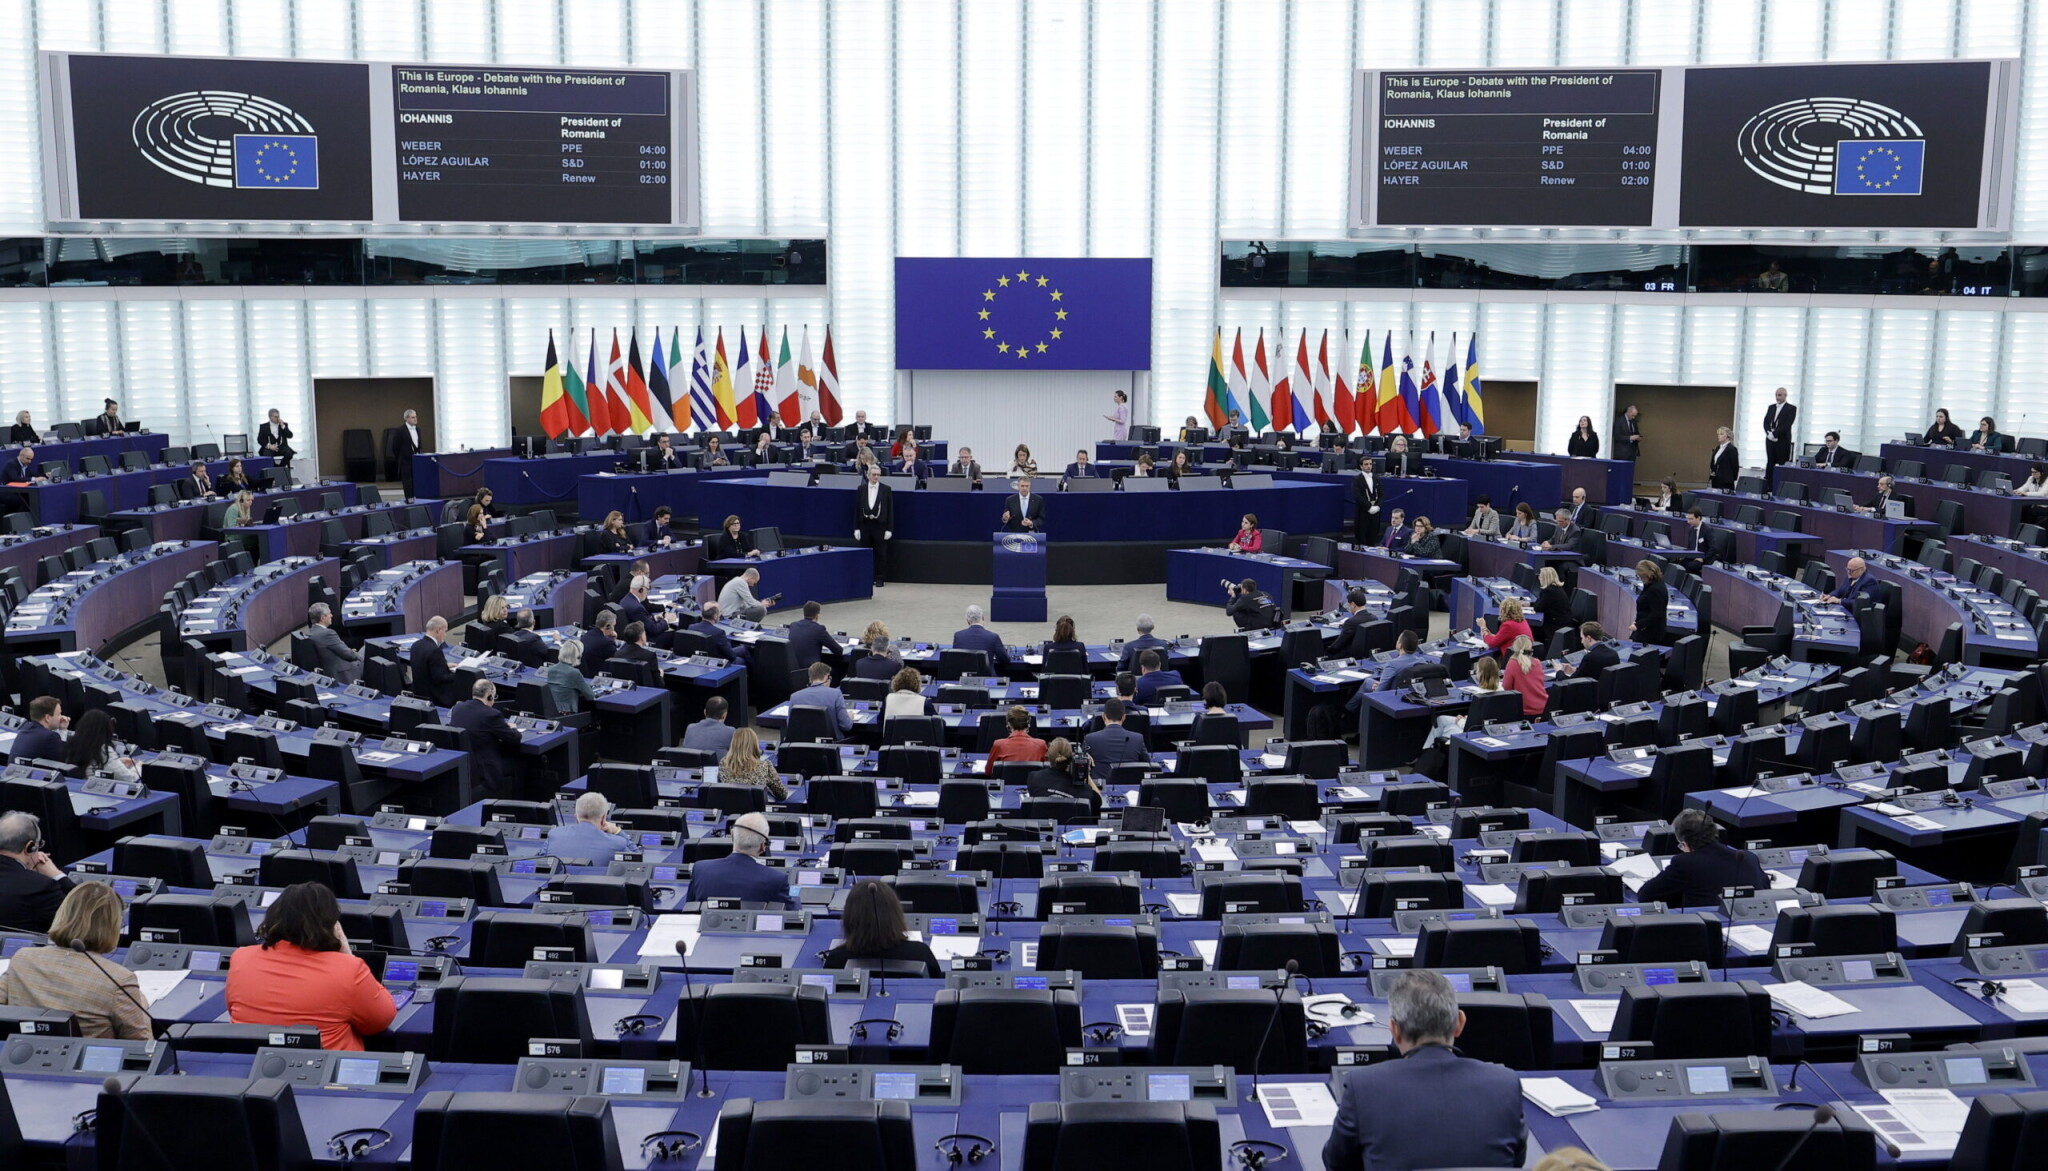 Hihetetlen: Az EP szerint Magyarország megalapozatlanul kapta meg az EU-s forrásokat